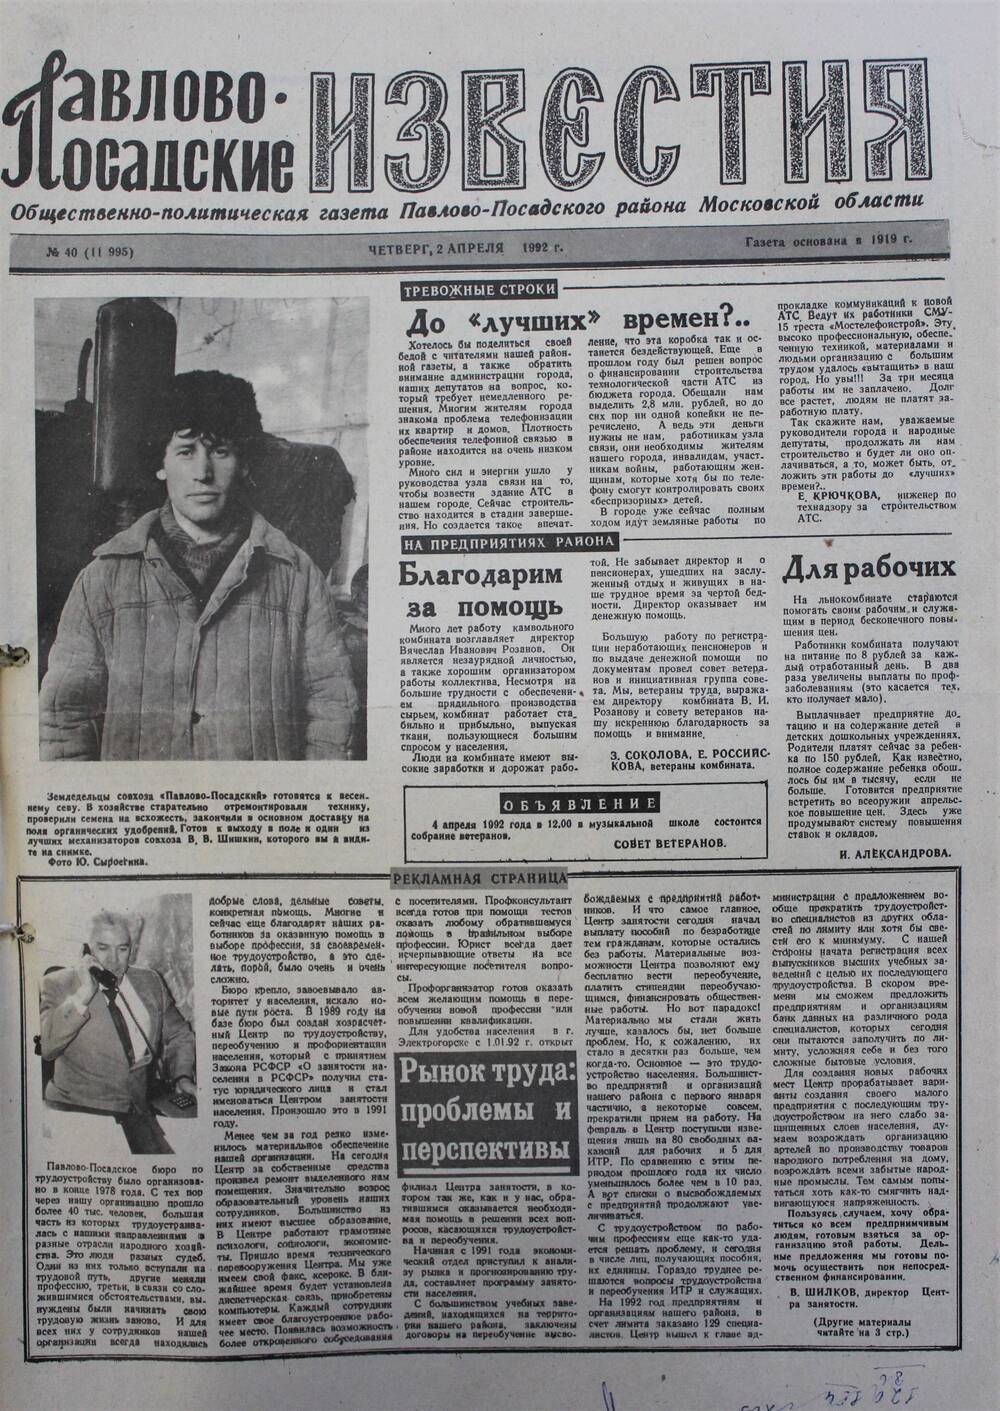 Газета Павлово-Посадские известия № 40 (11995)  от 2 апреля 1992 г.